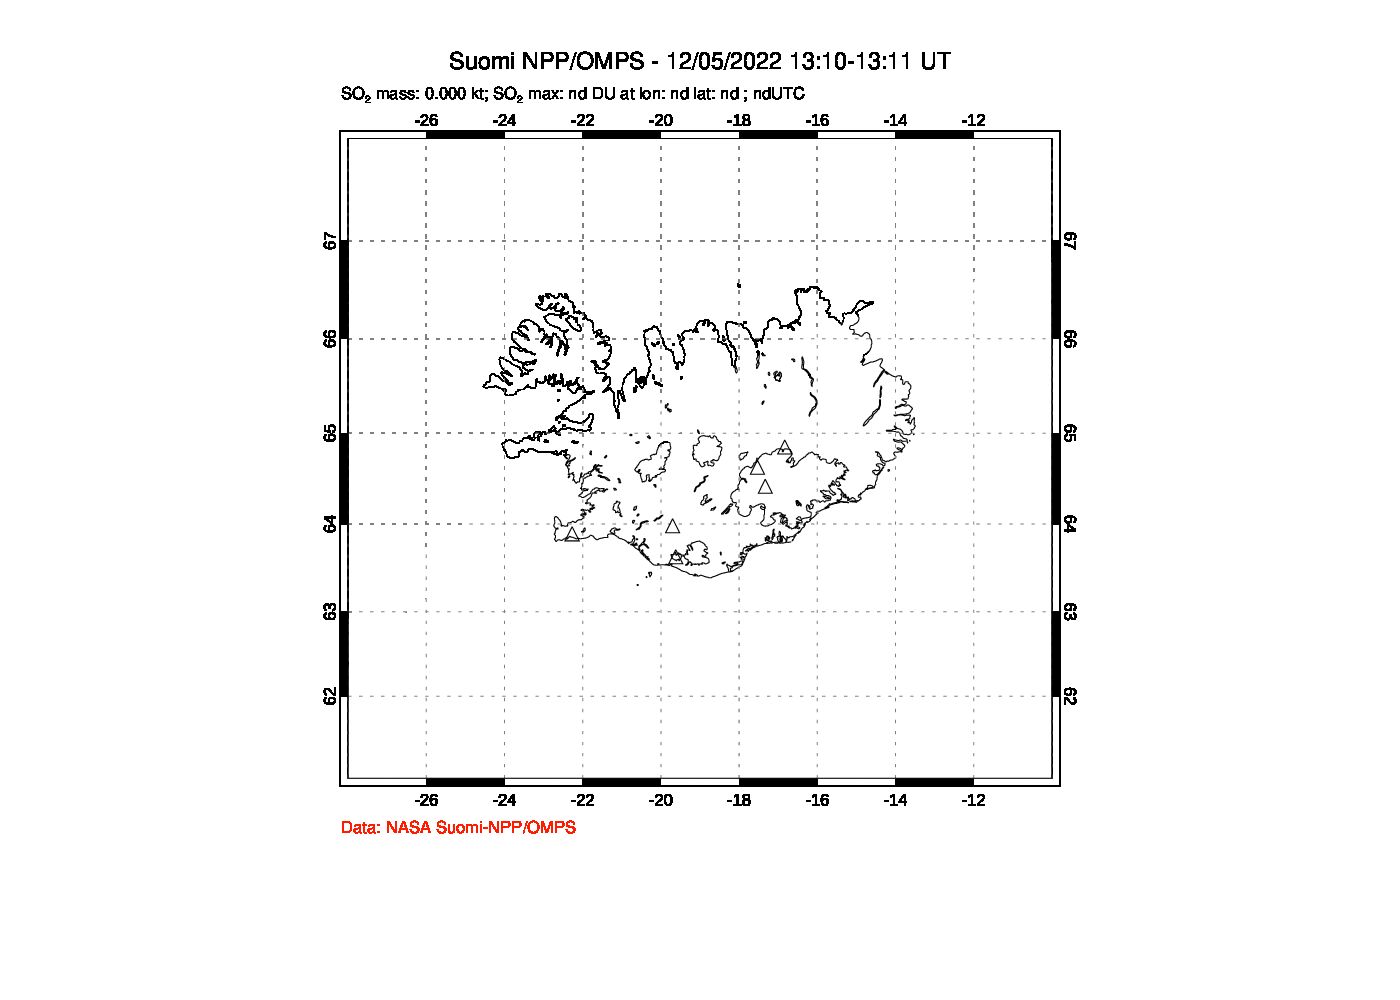 A sulfur dioxide image over Iceland on Dec 05, 2022.